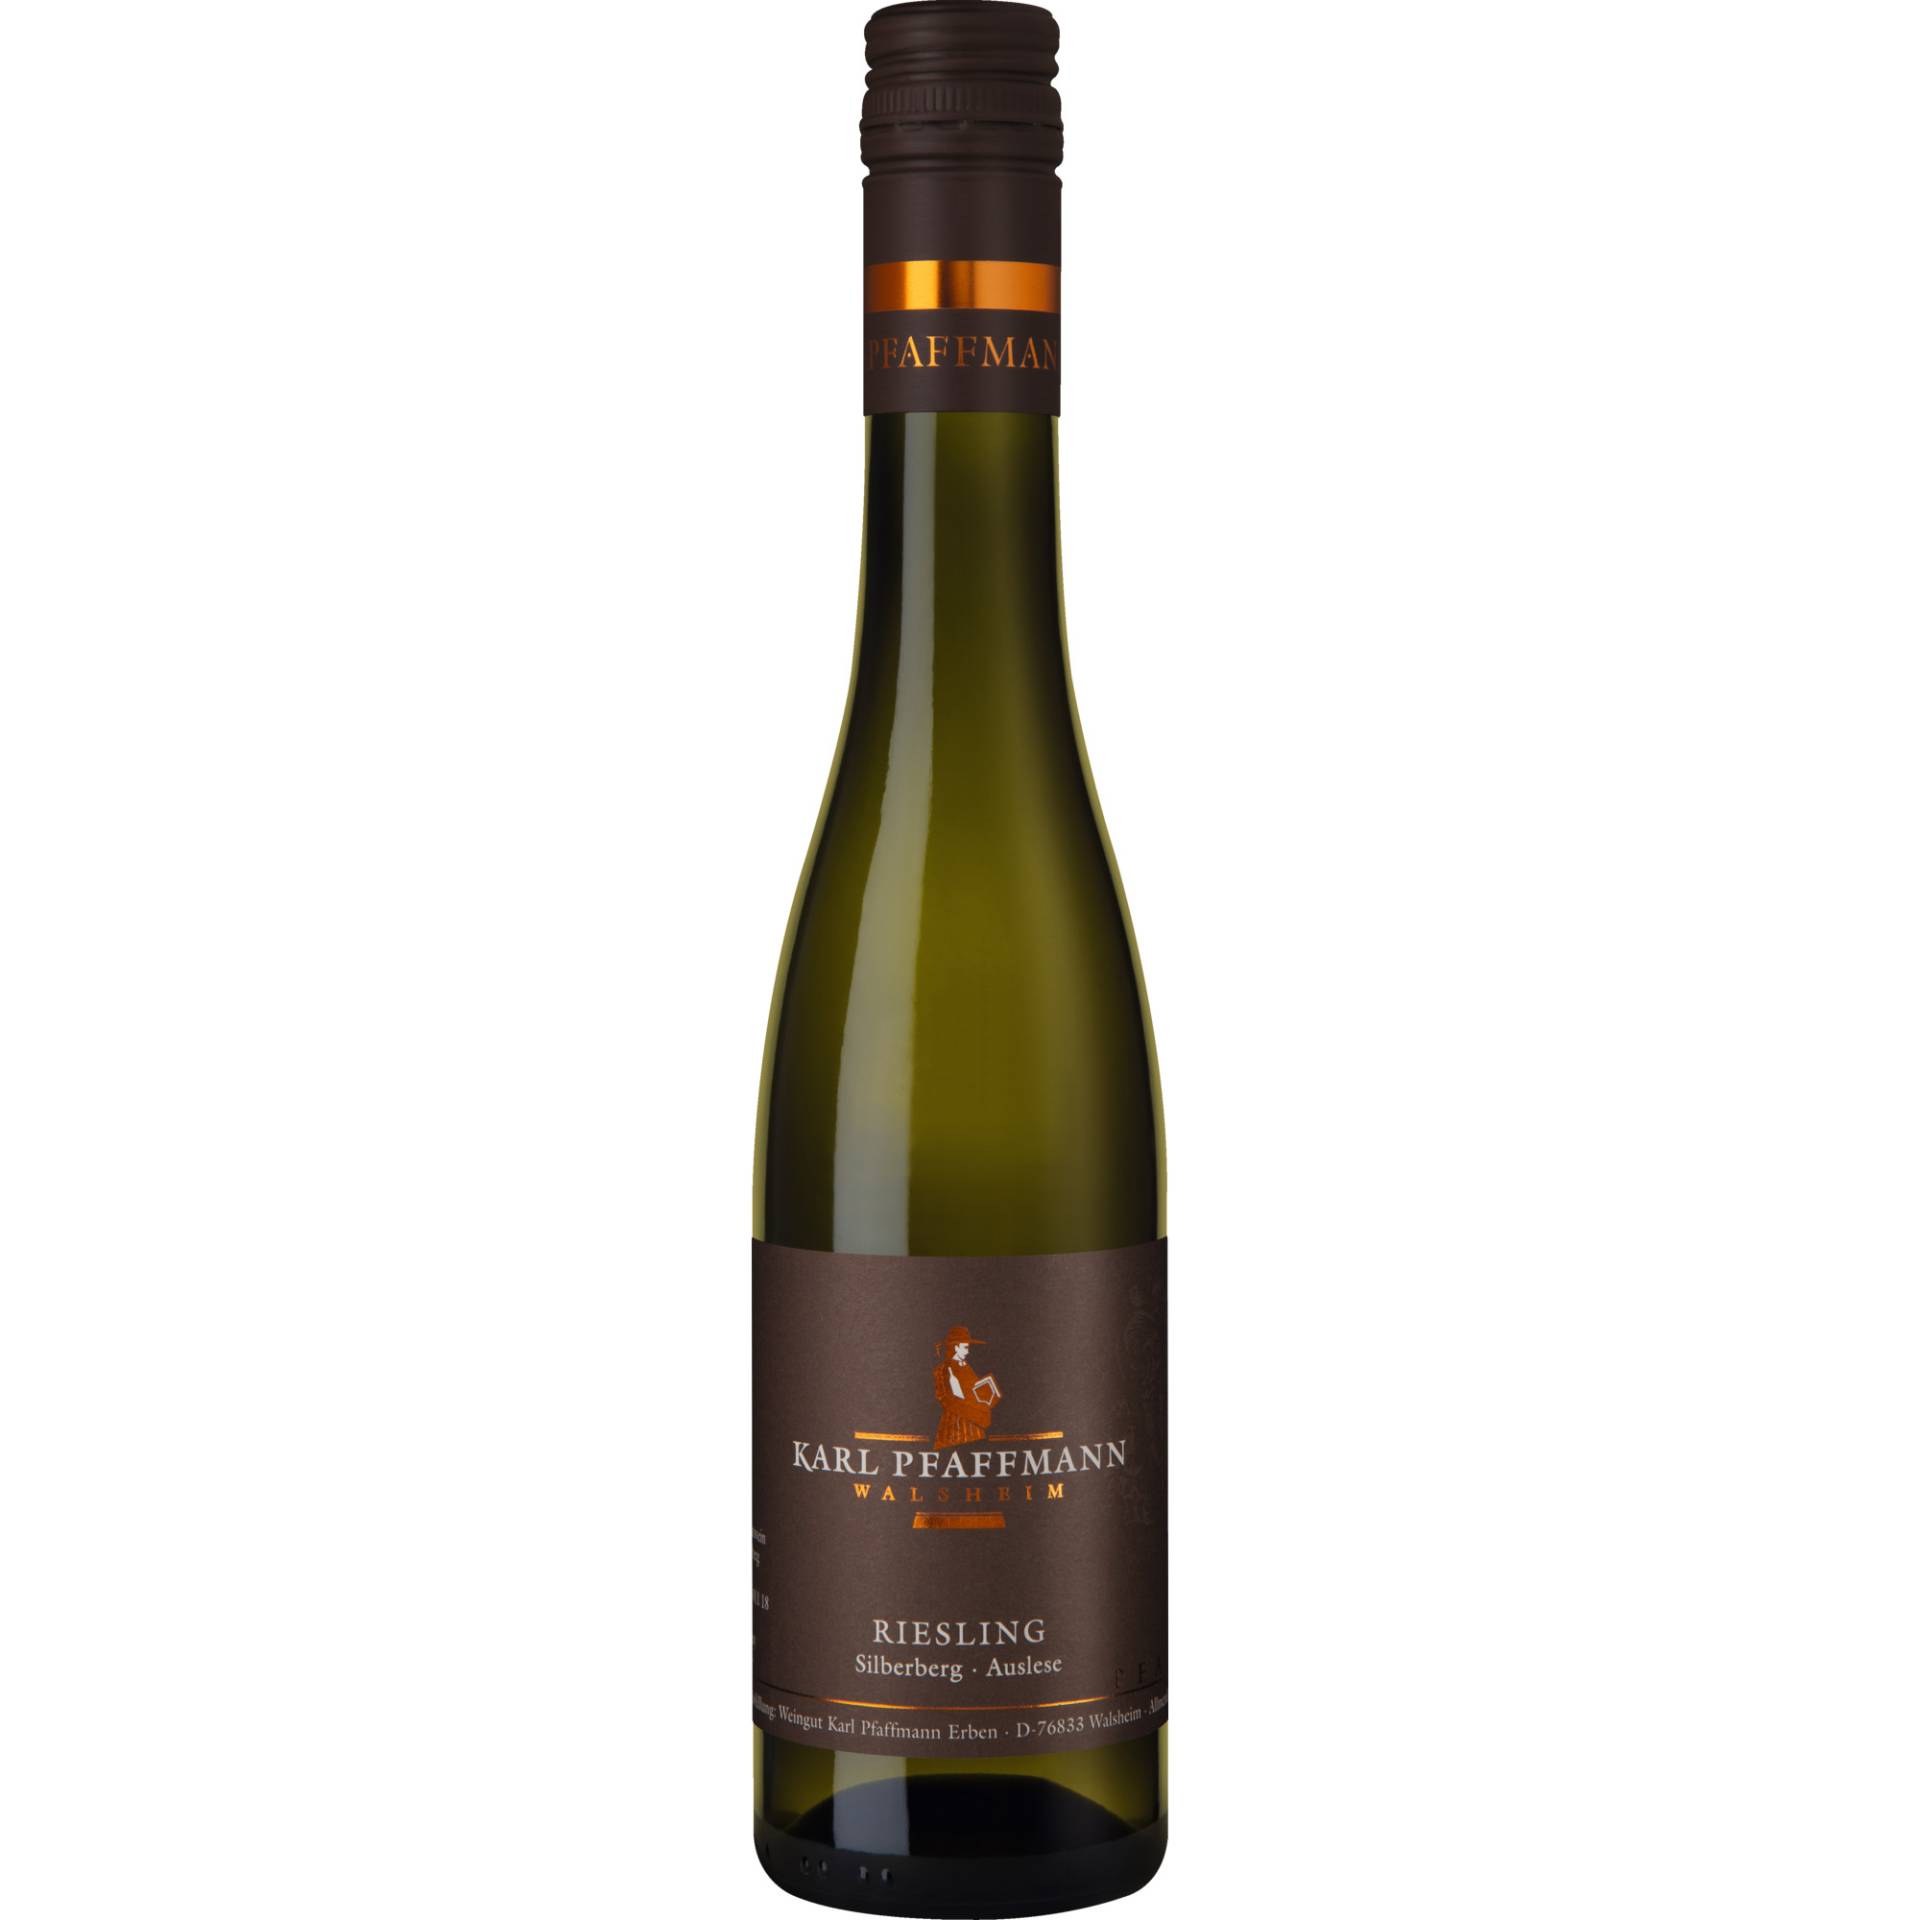 Silberberg Riesling Auslese, Pfalz 0,375 L, Pfalz, 2019, Weißwein von Weingut Karl Pfaffmann, D - 76833 Walsheim